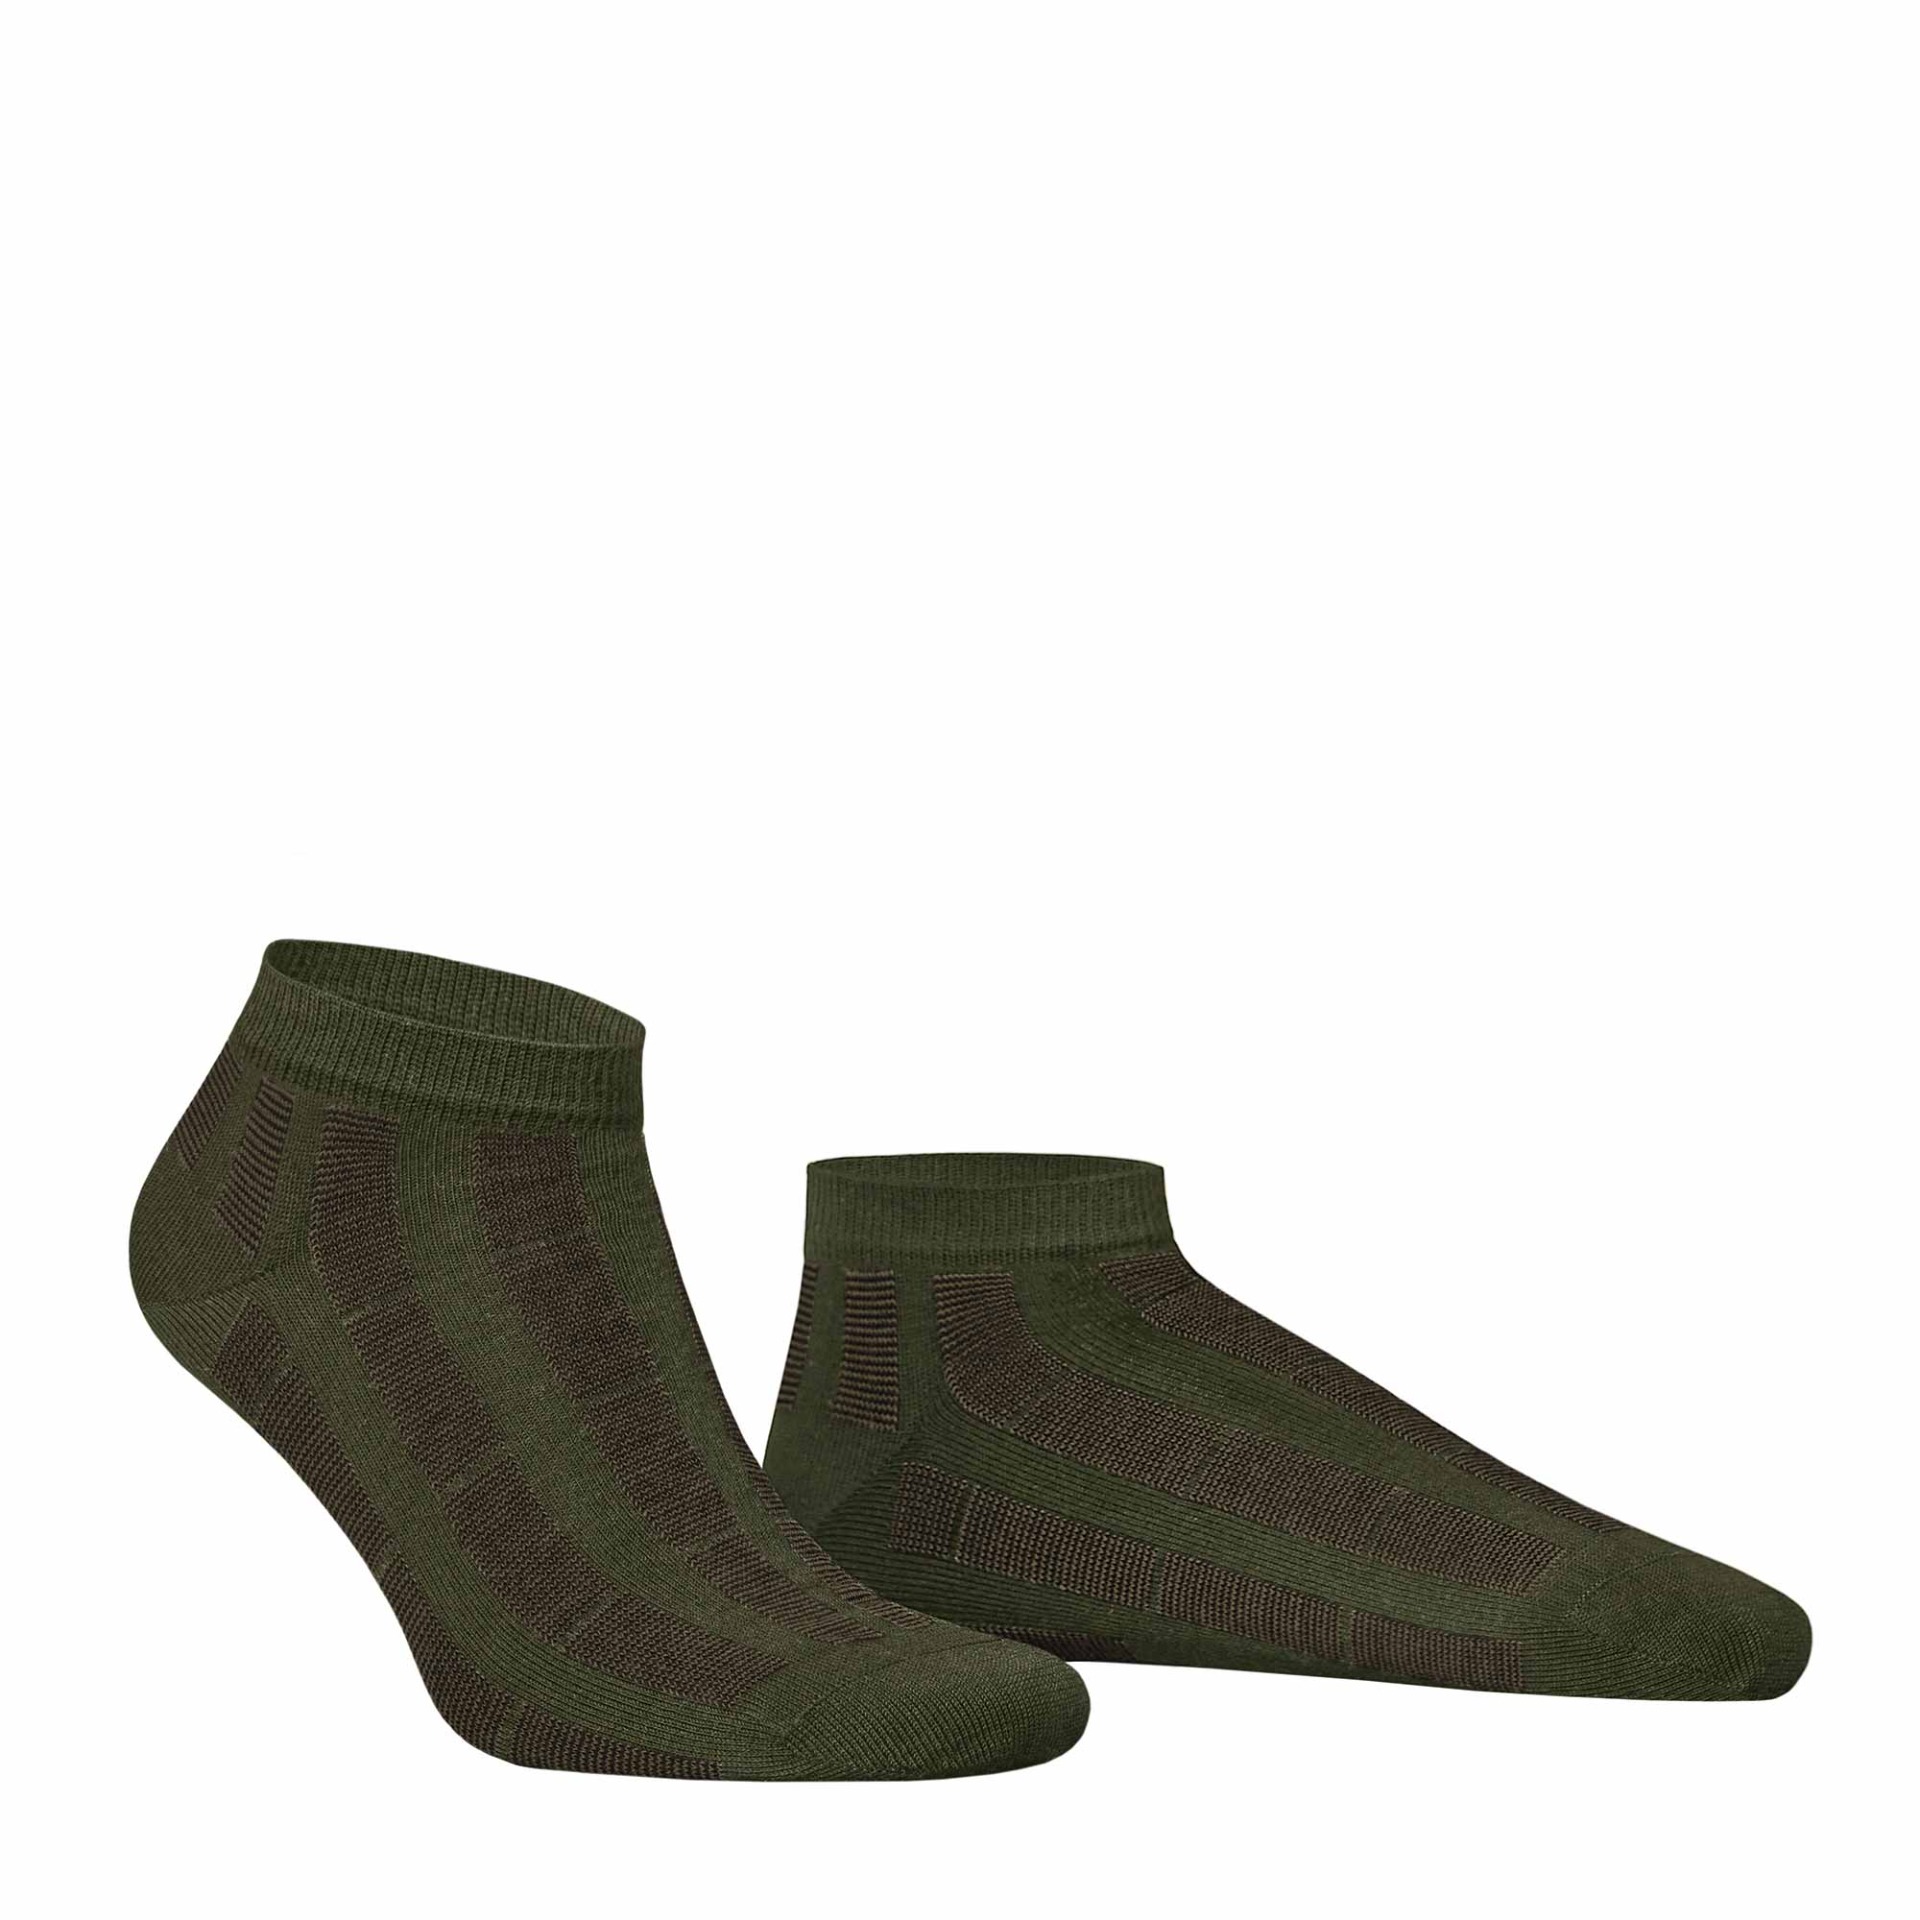 HUDSON Herren PIN -  43/46 - Sneaker Socken mit Streifen-Muster - Army green 0112 (Grün)